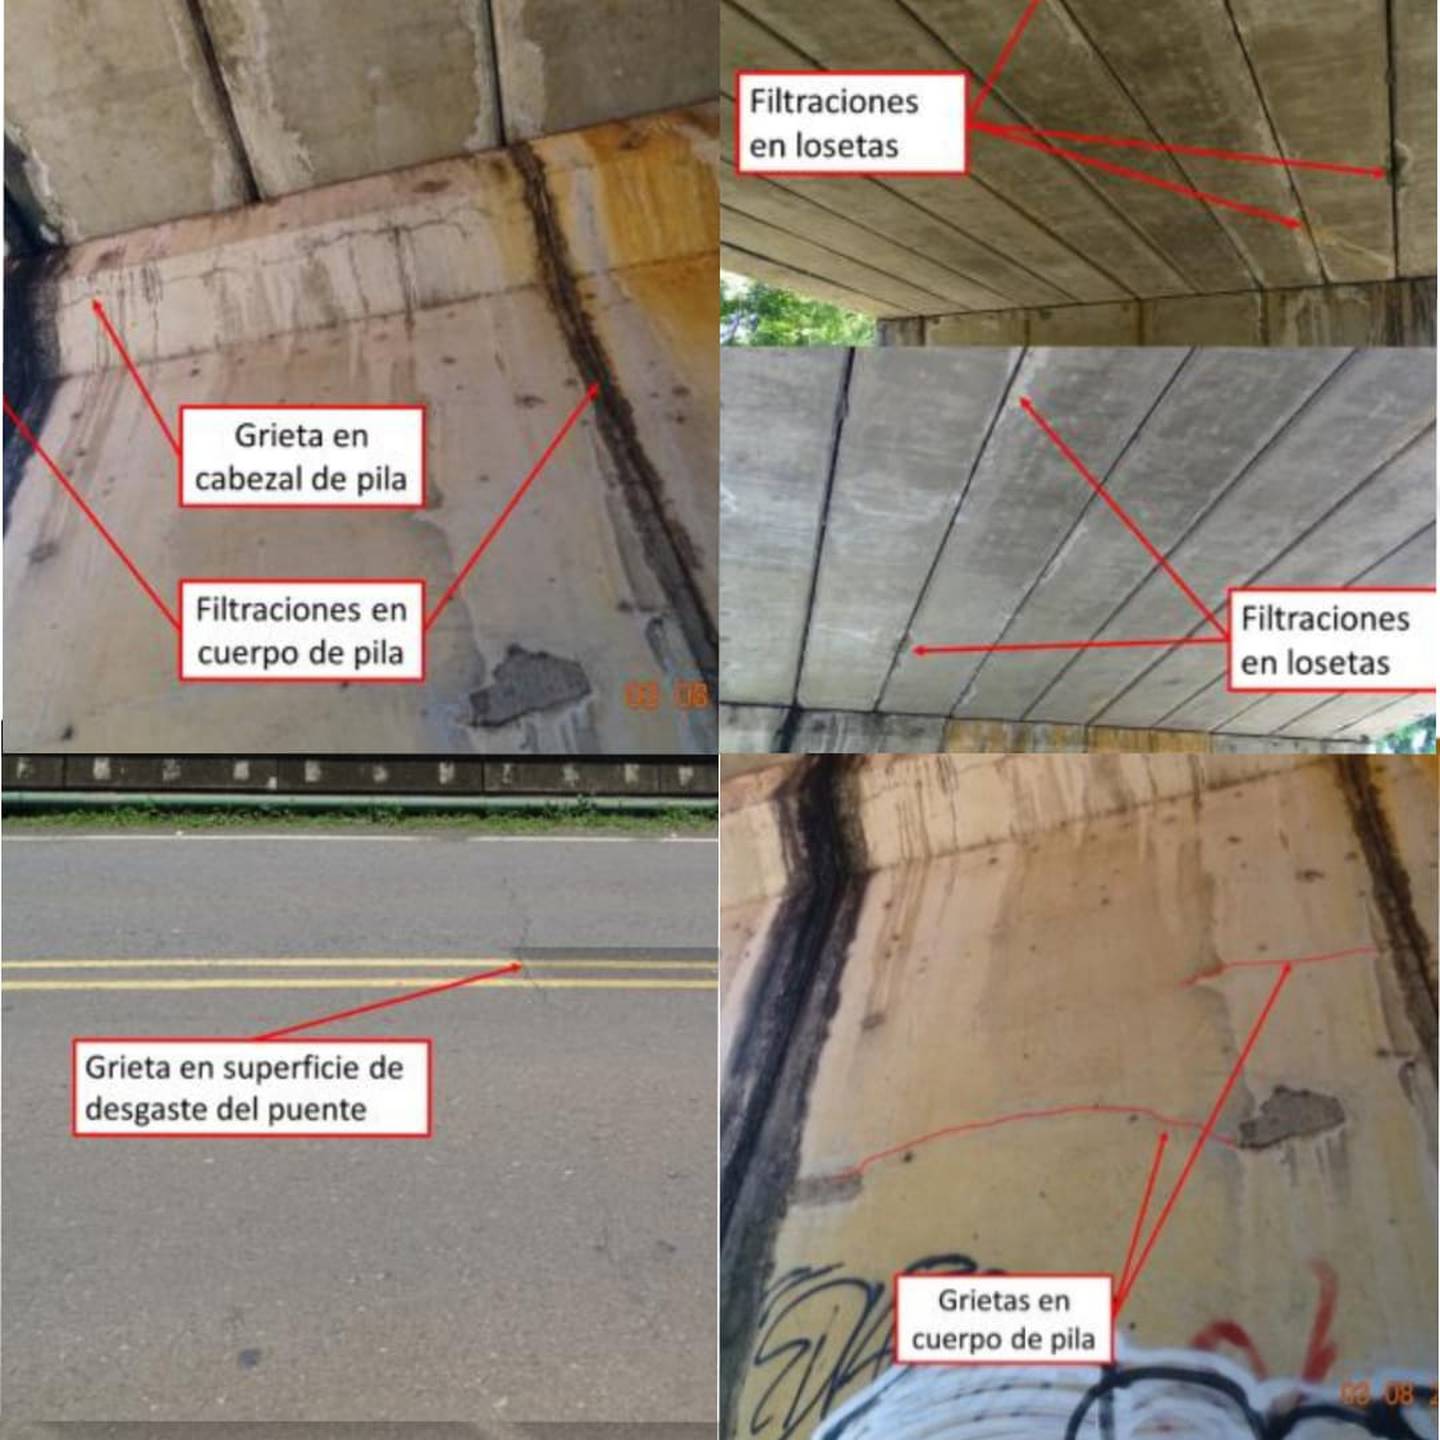 Algunos de los defectos documentados en el informe del puente sobre la ruta 27 en Coyolar. Foto:Lanamme.